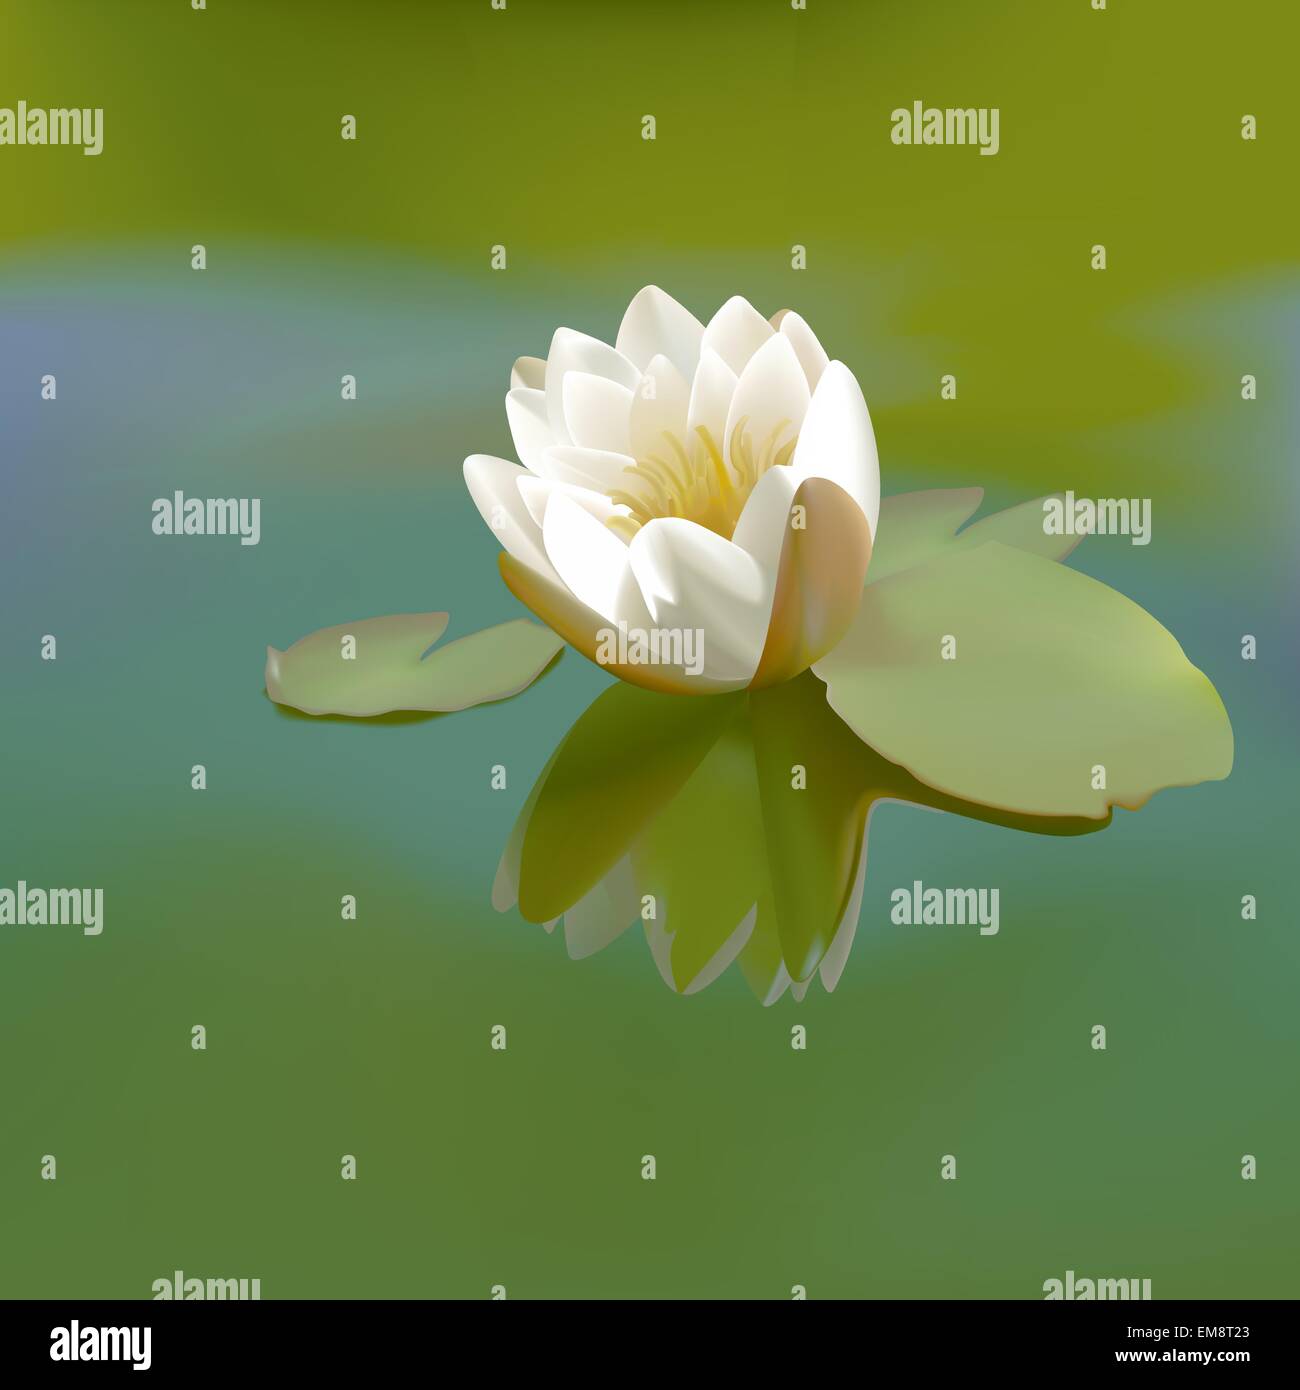 White Lotus Flower Stock Vector